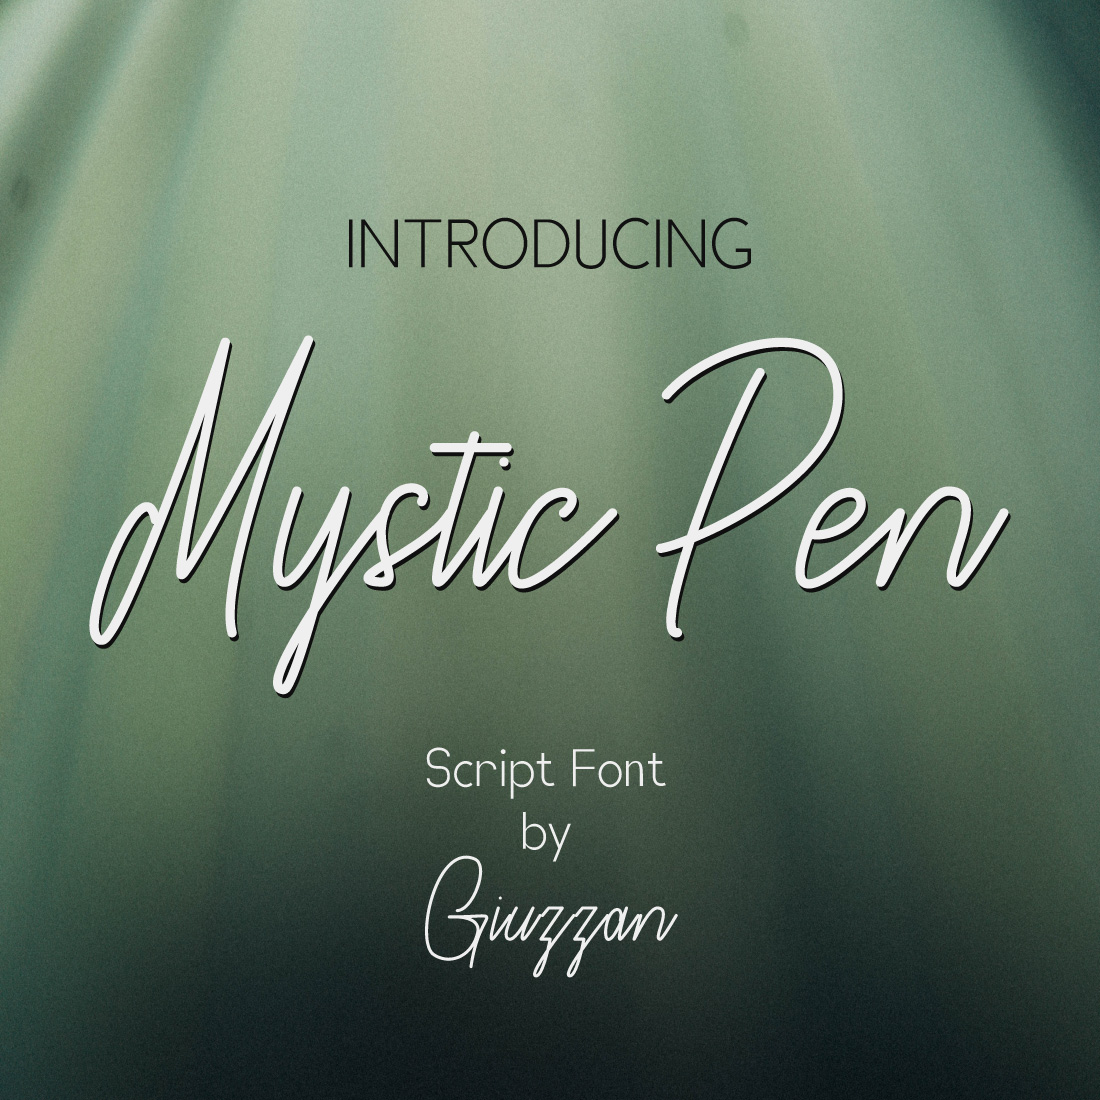 Mystic Pen | Script Font cover image.